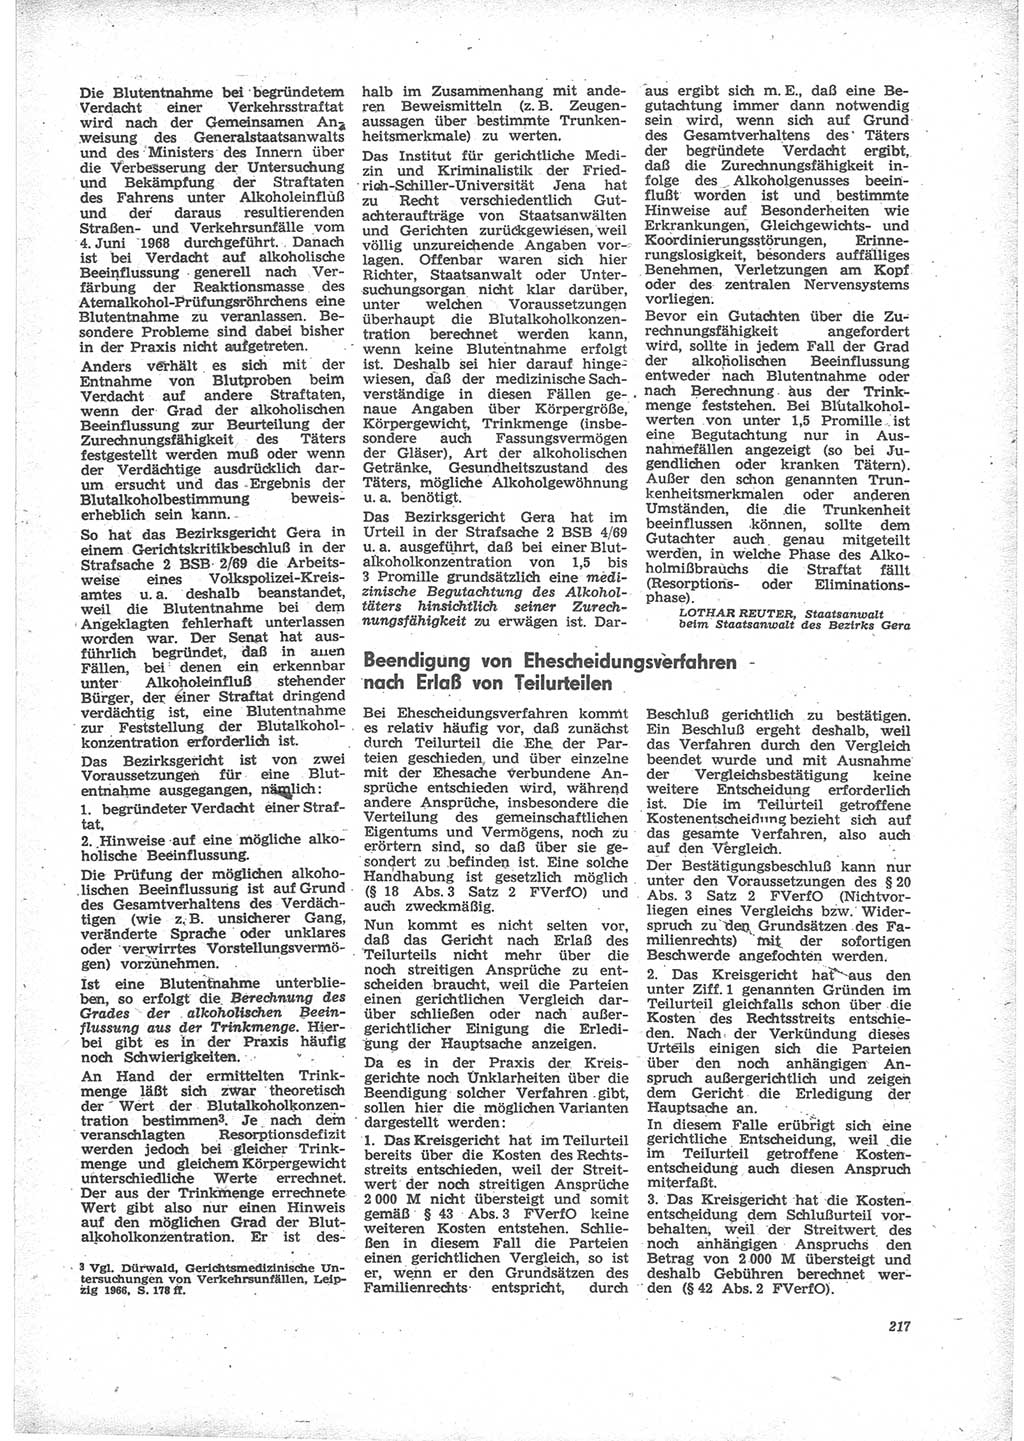 Neue Justiz (NJ), Zeitschrift für Recht und Rechtswissenschaft [Deutsche Demokratische Republik (DDR)], 24. Jahrgang 1970, Seite 217 (NJ DDR 1970, S. 217)